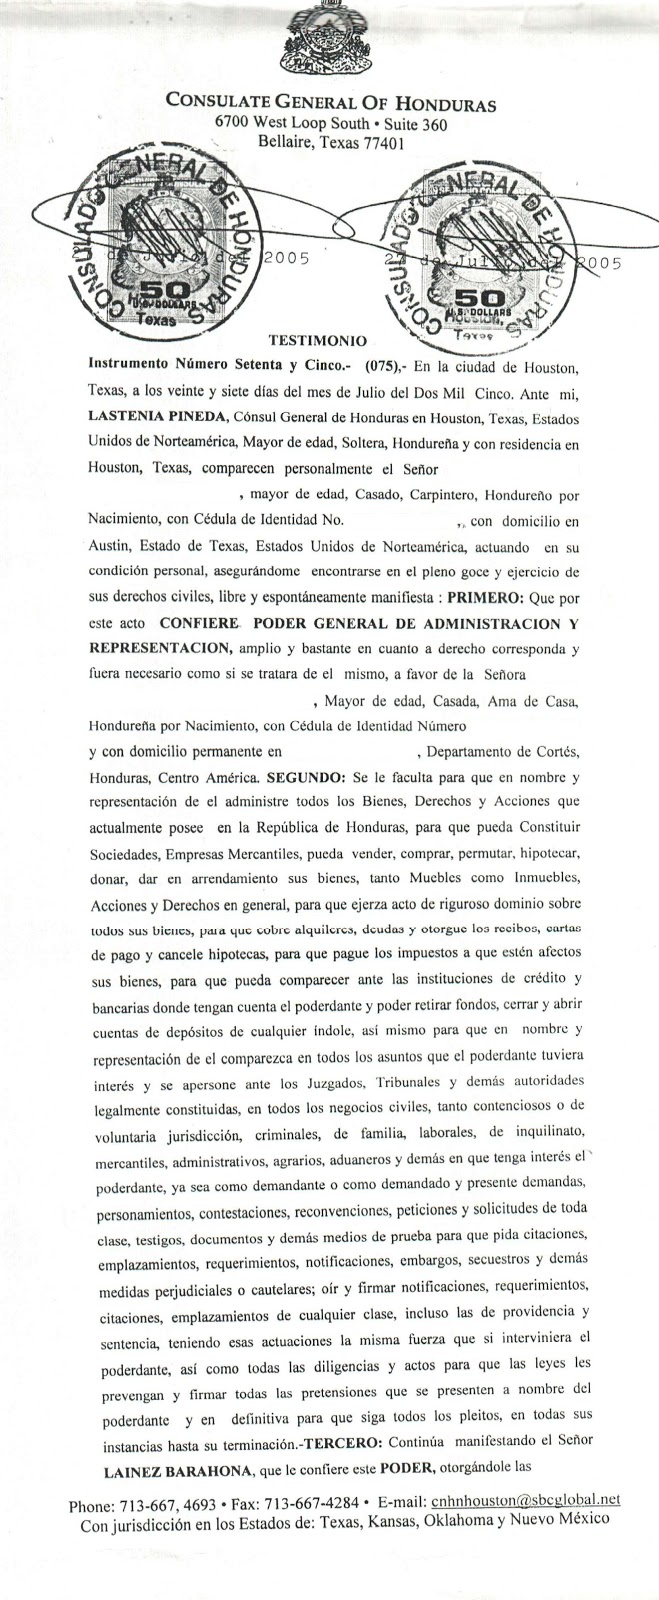 Modelos de Contratos Civiles (Honduras): Poder General de Administracion y  Representacion via Consulado